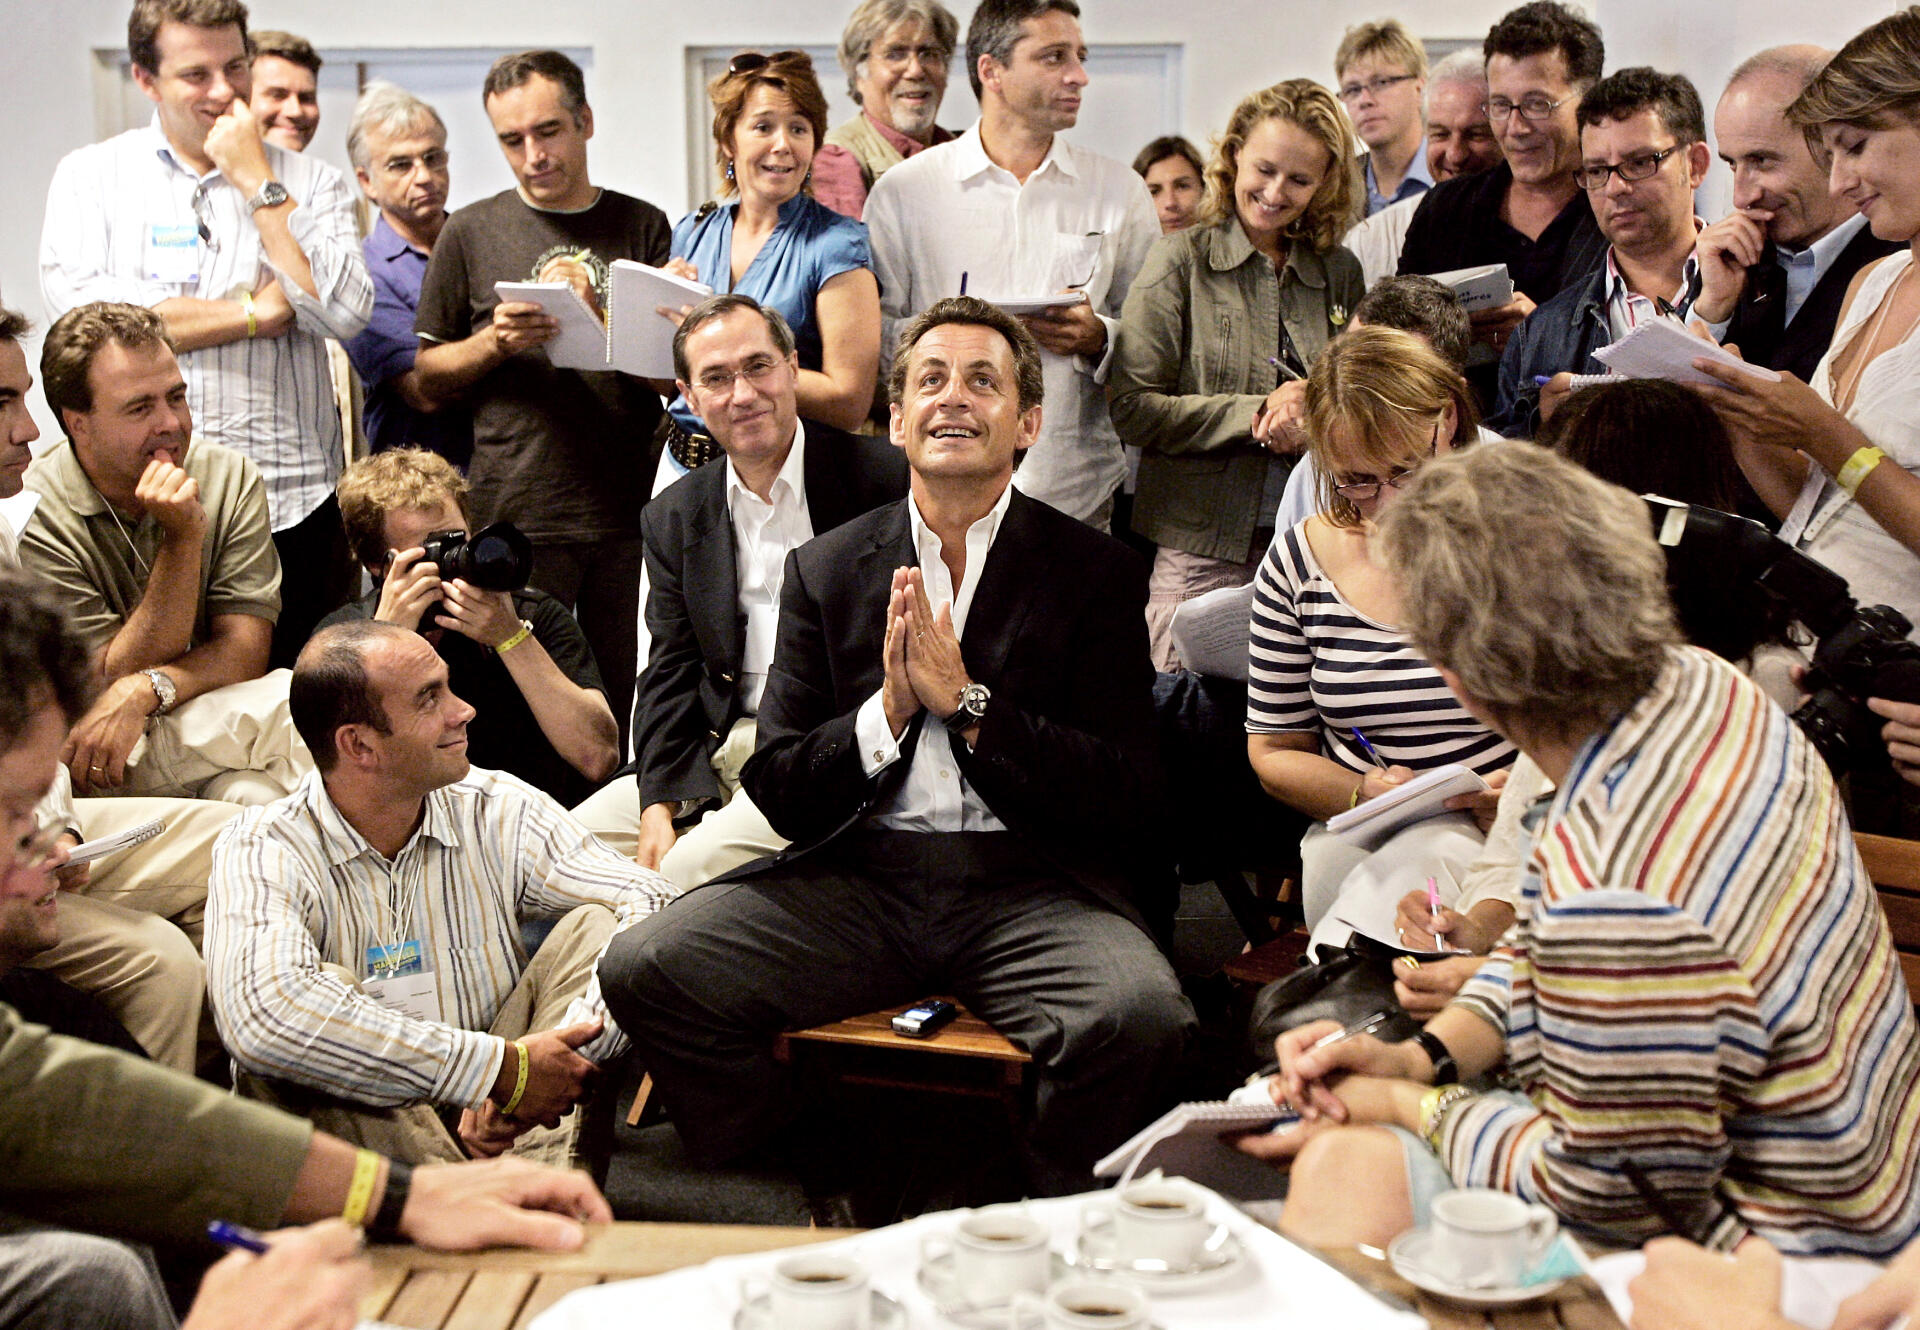 Nicolas Sarkozy, ministre de l’intérieur et candidat UMP à la présidentielle, s’adresse aux journalistes, dont deux du « Monde », Philippe Ridet (debout, 4ᵉ à dr.) et Arnaud Leparmentier (derrière lui, en chemise bleue, à lunettes), à Marseille, le 2 septembre 2006. Sont également présents Hélène Jouan (France Inter, debout, en bleu), Jean-Francois Achilli (France Inter, au centre, juste derrière Nicolas Sarkozy), Caroline Roux (Canal+, en kaki), Frédéric Haziza (LCP et Radio J, debout, 3ᵉ à droite), Géraldine Woessner (BFM-TV, debout, tout à droite), Nadège Puljak (AFP, assise à gauche de Nicolas Sarkozy), Bruno Jeudy (JDD, debout, 4ᵉ à gauche), Claude Guéant (le directeur de campagne de Nicolas Sarkozy, assis à sa droite), Luc Chatel (le porte-parole du candidat UMP, assis à gauche, la main sur la bouche).